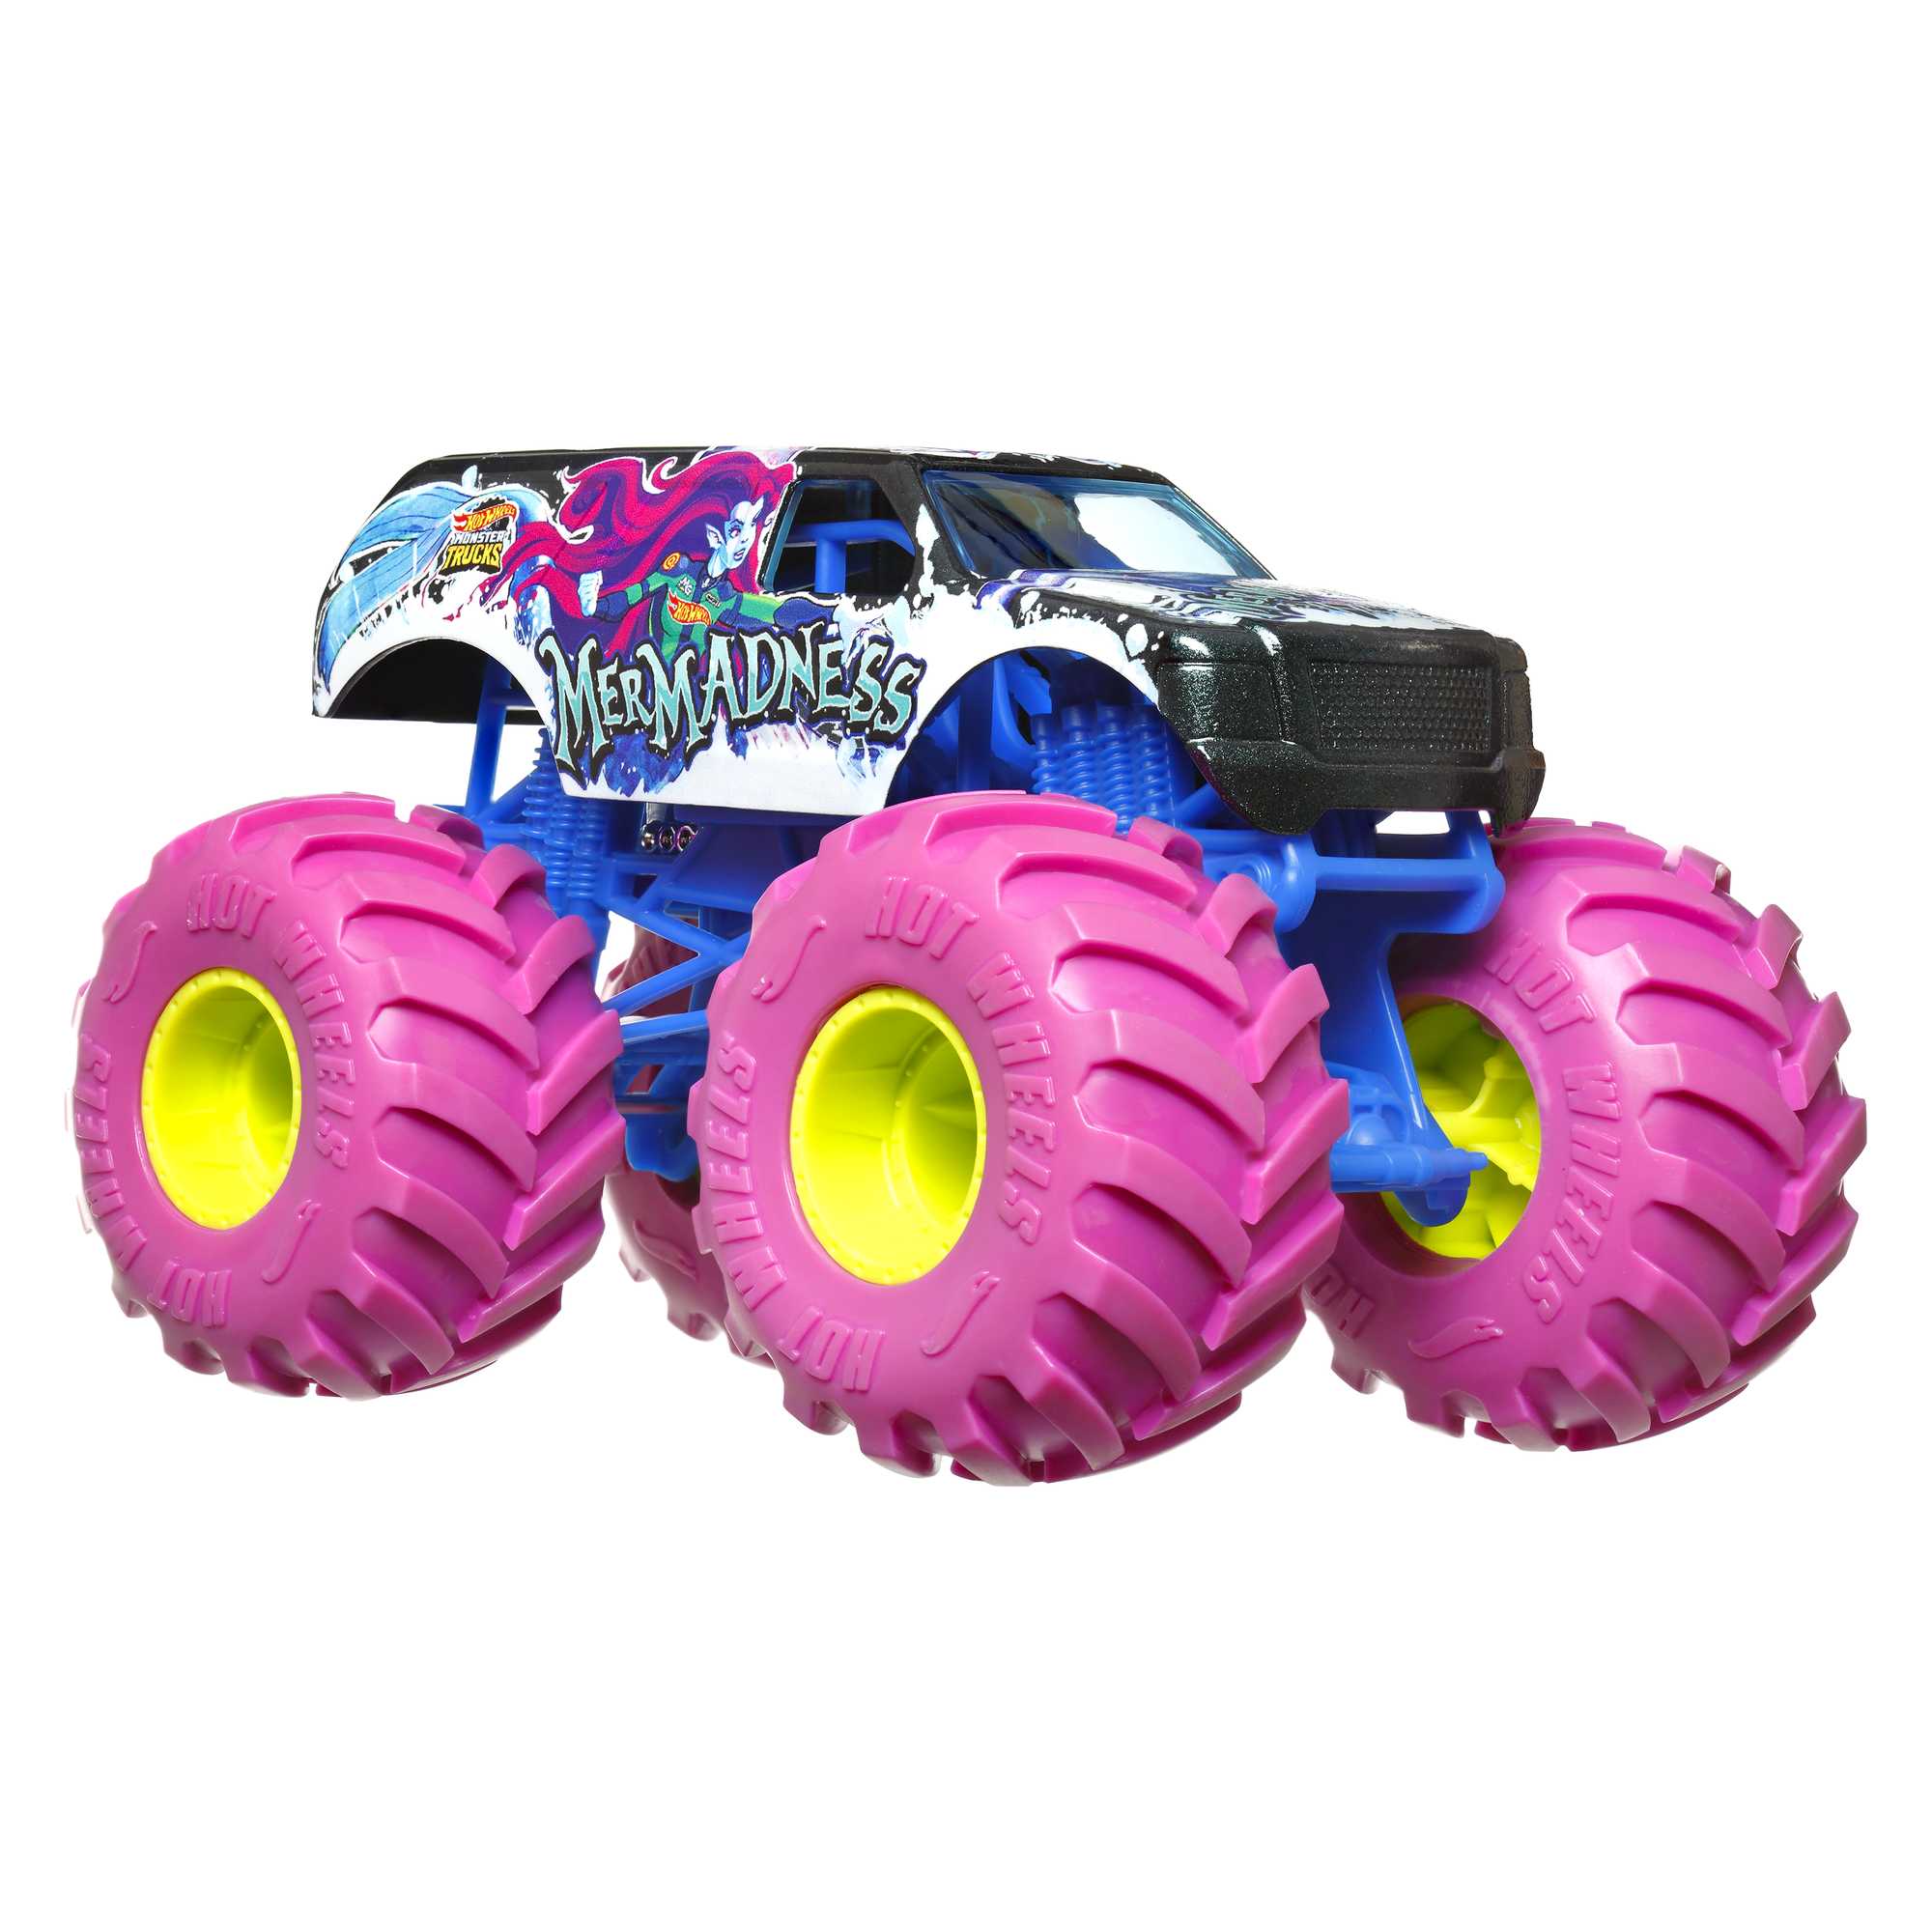 Pista Monster Trucks Pneus De Acrobacia - Hot Wheels - Mattel, Rosa